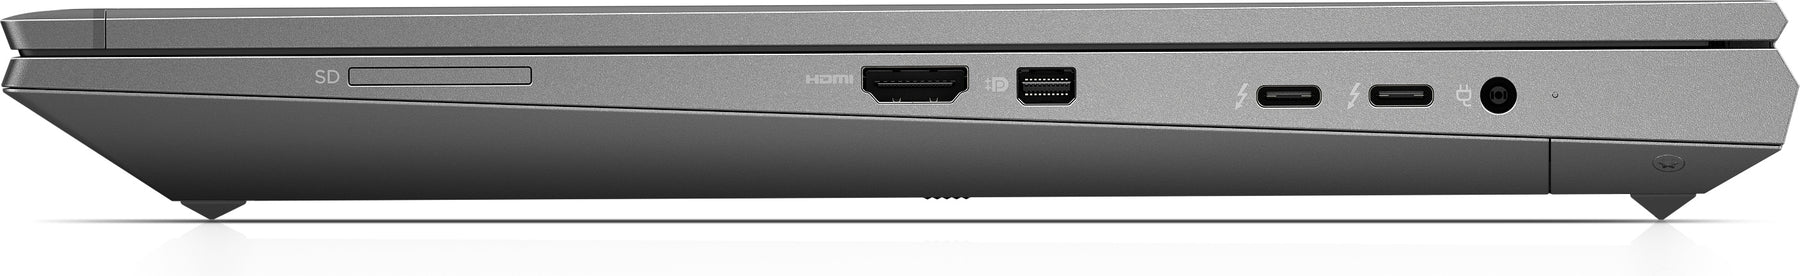 ZBook Fury 15 G8 - i7 11800H 2.3 GHz, Win 11 Pro 64-bit, Nvidia RTX A2000, 32 GB RAM, 1 TB SSD, 15.6" IPS 1920x1080, Wi-Fi 6, Portuguese keyboard